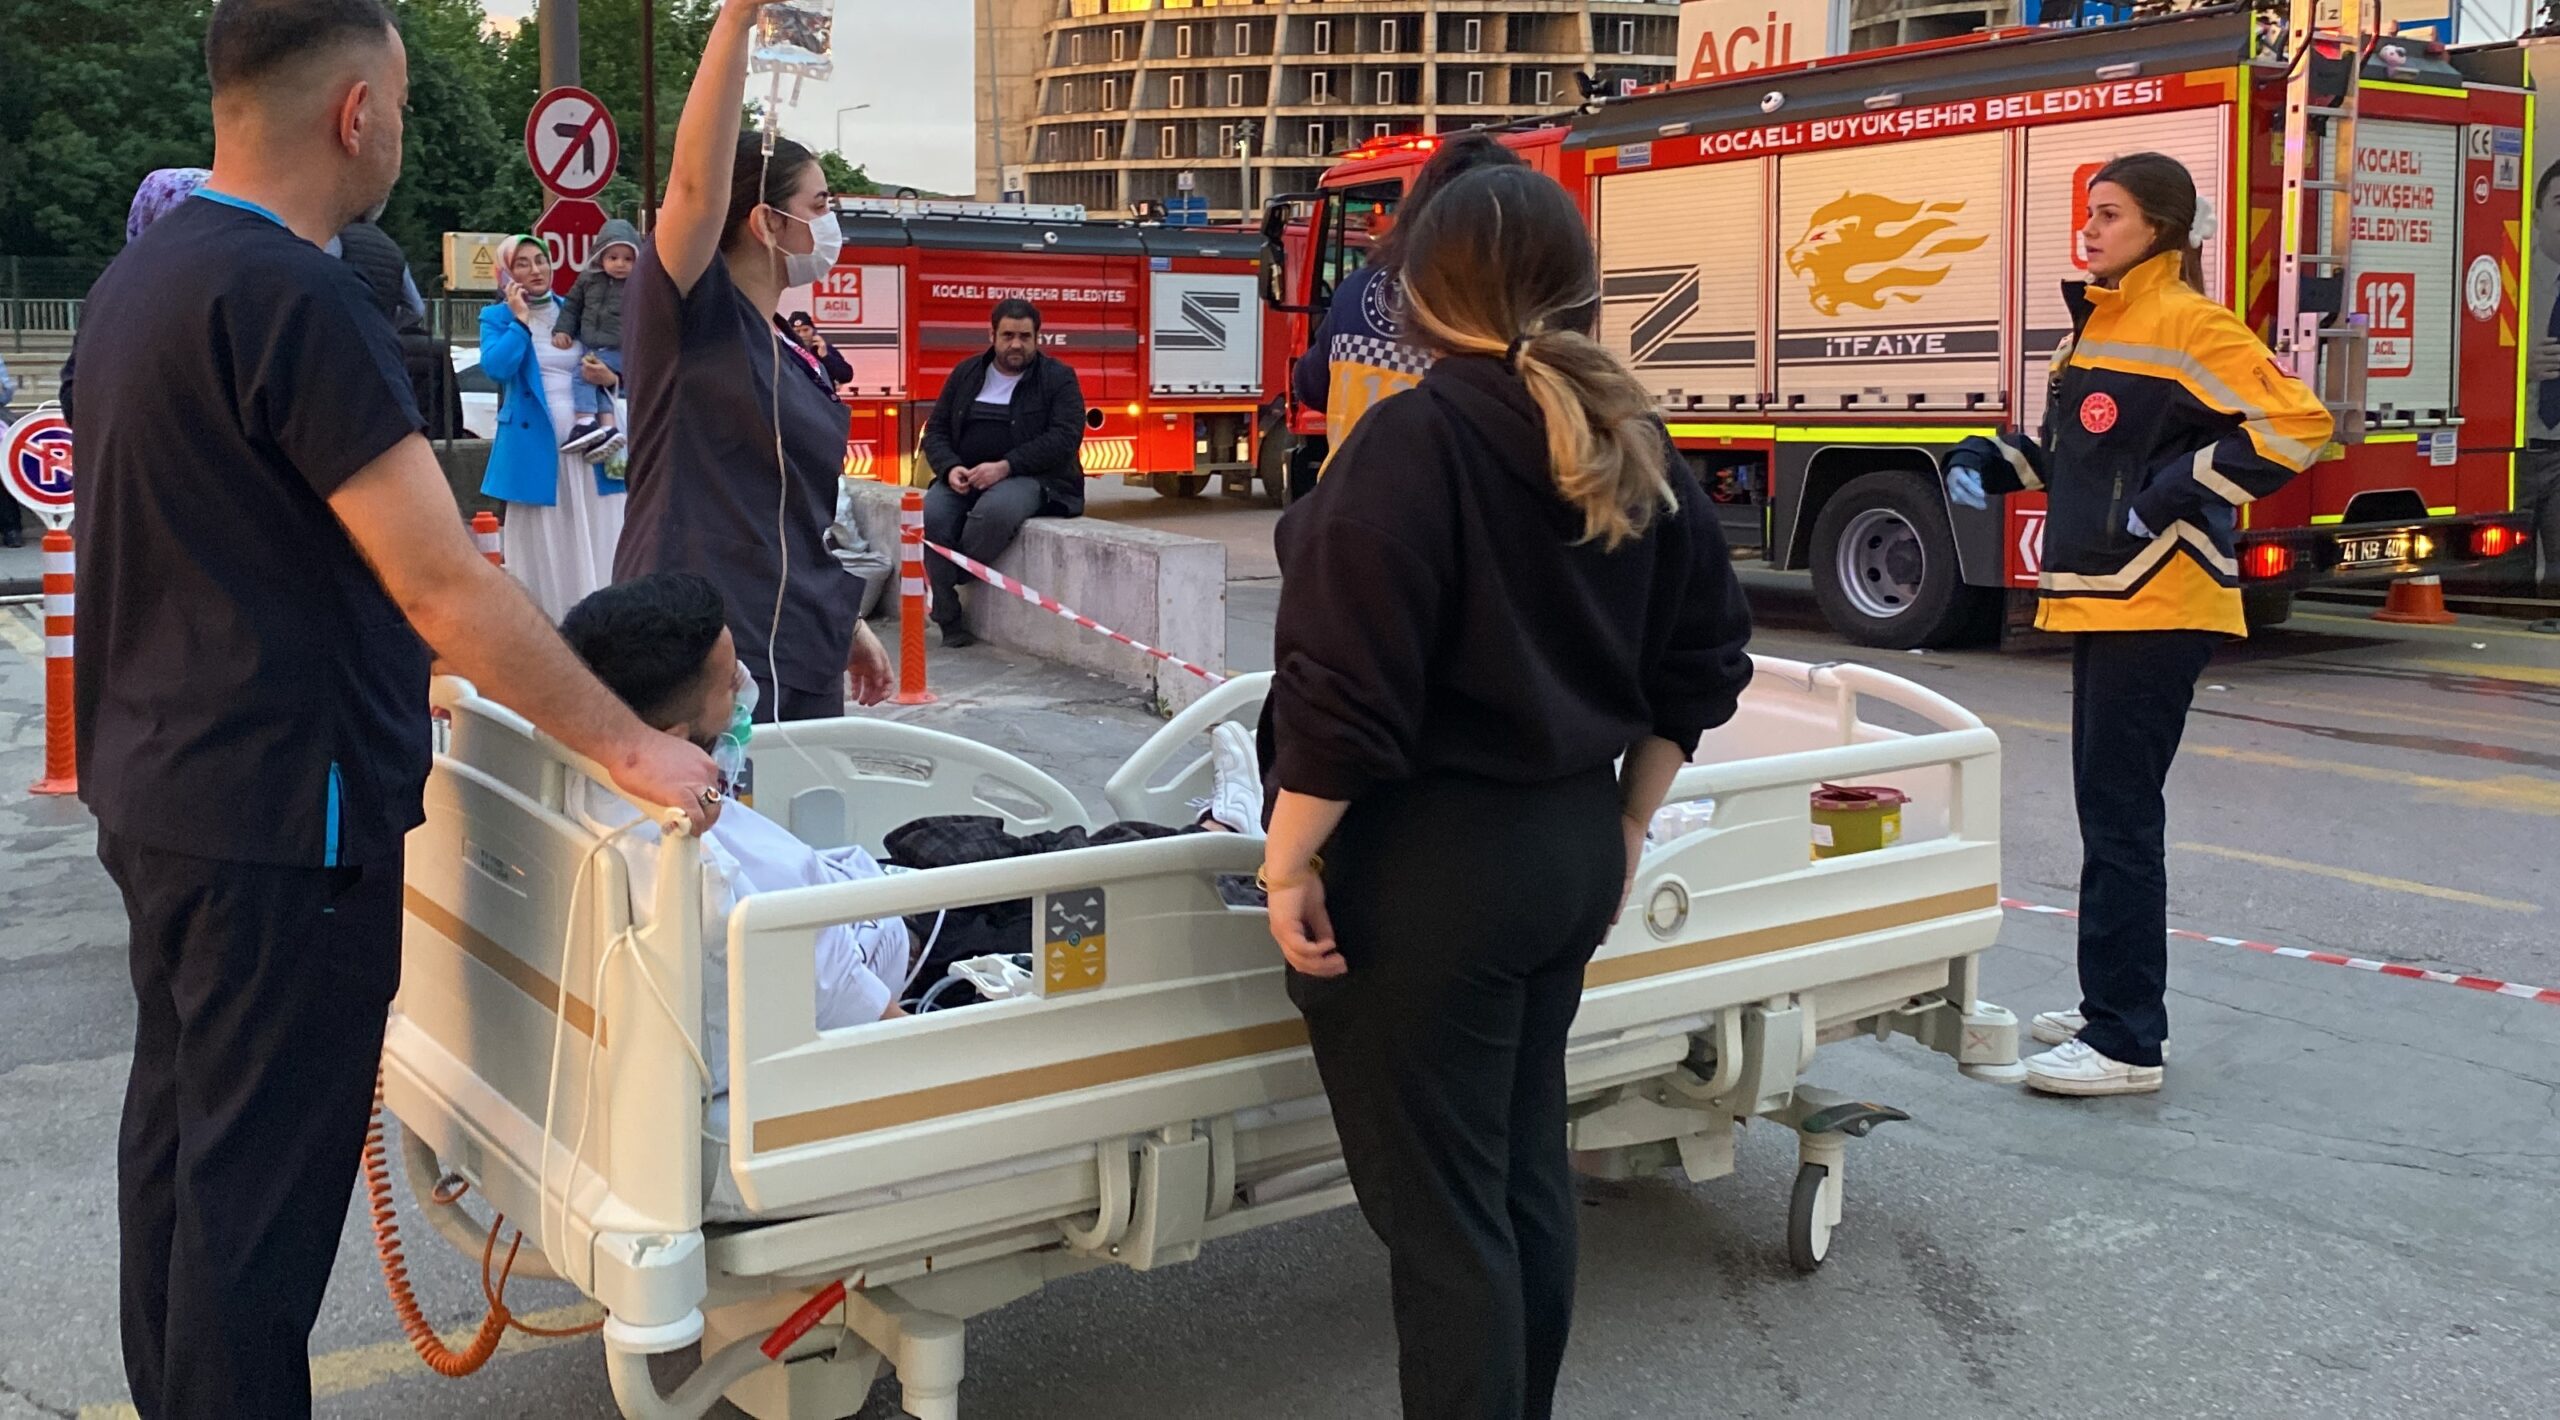 Başiskele’deki Hastanede Yangın! Acil Servis Hastaları Tahliye Edildi